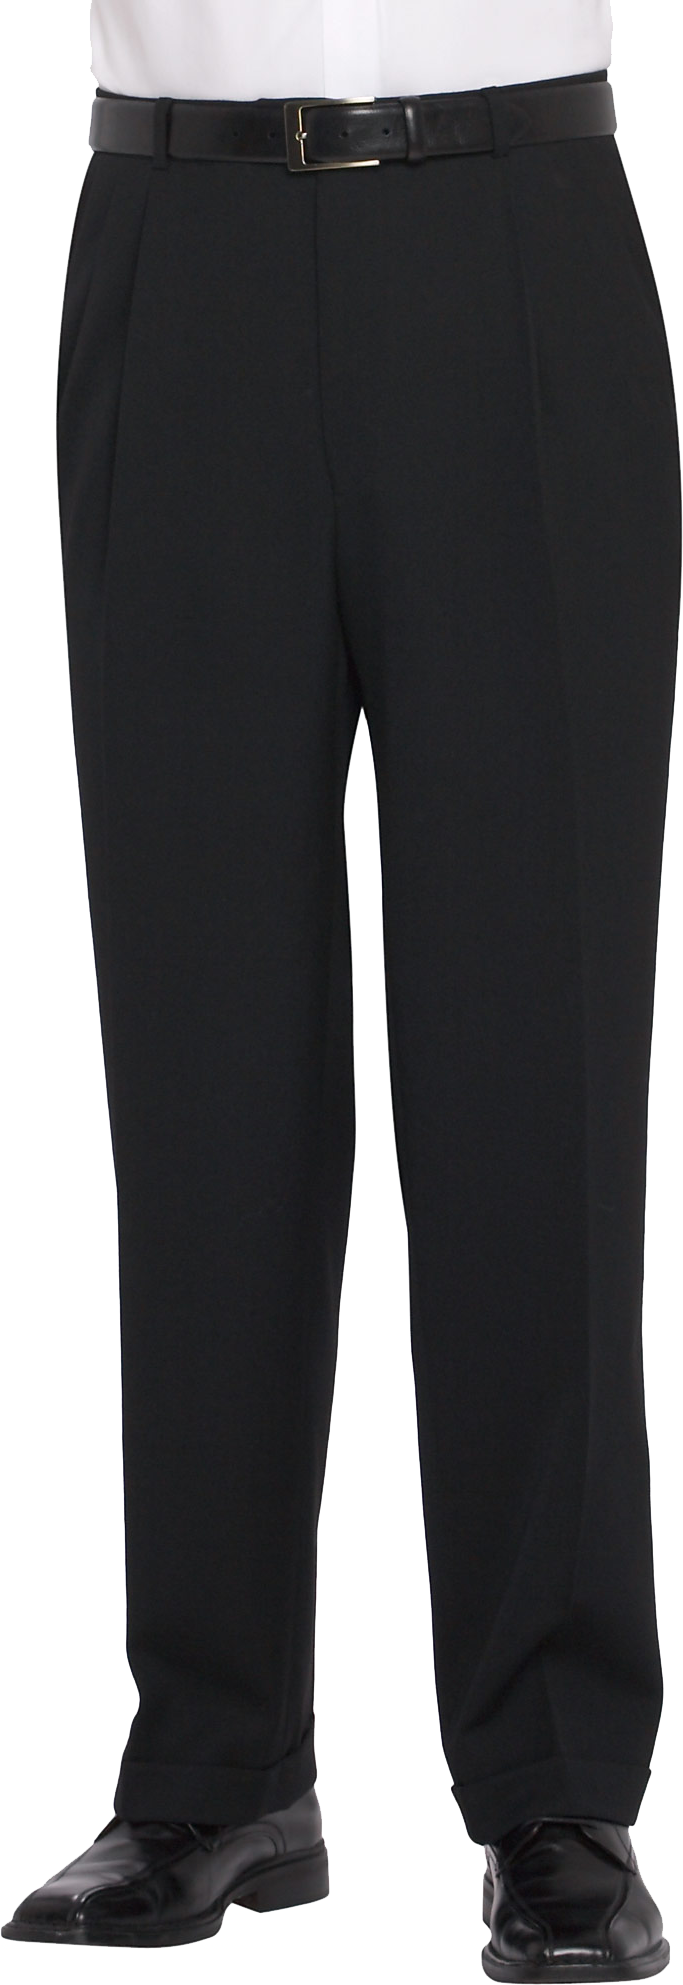 Pronto Uomo Black Classic Fit Dress Pants - Men's Sale | Men's Wearhouse